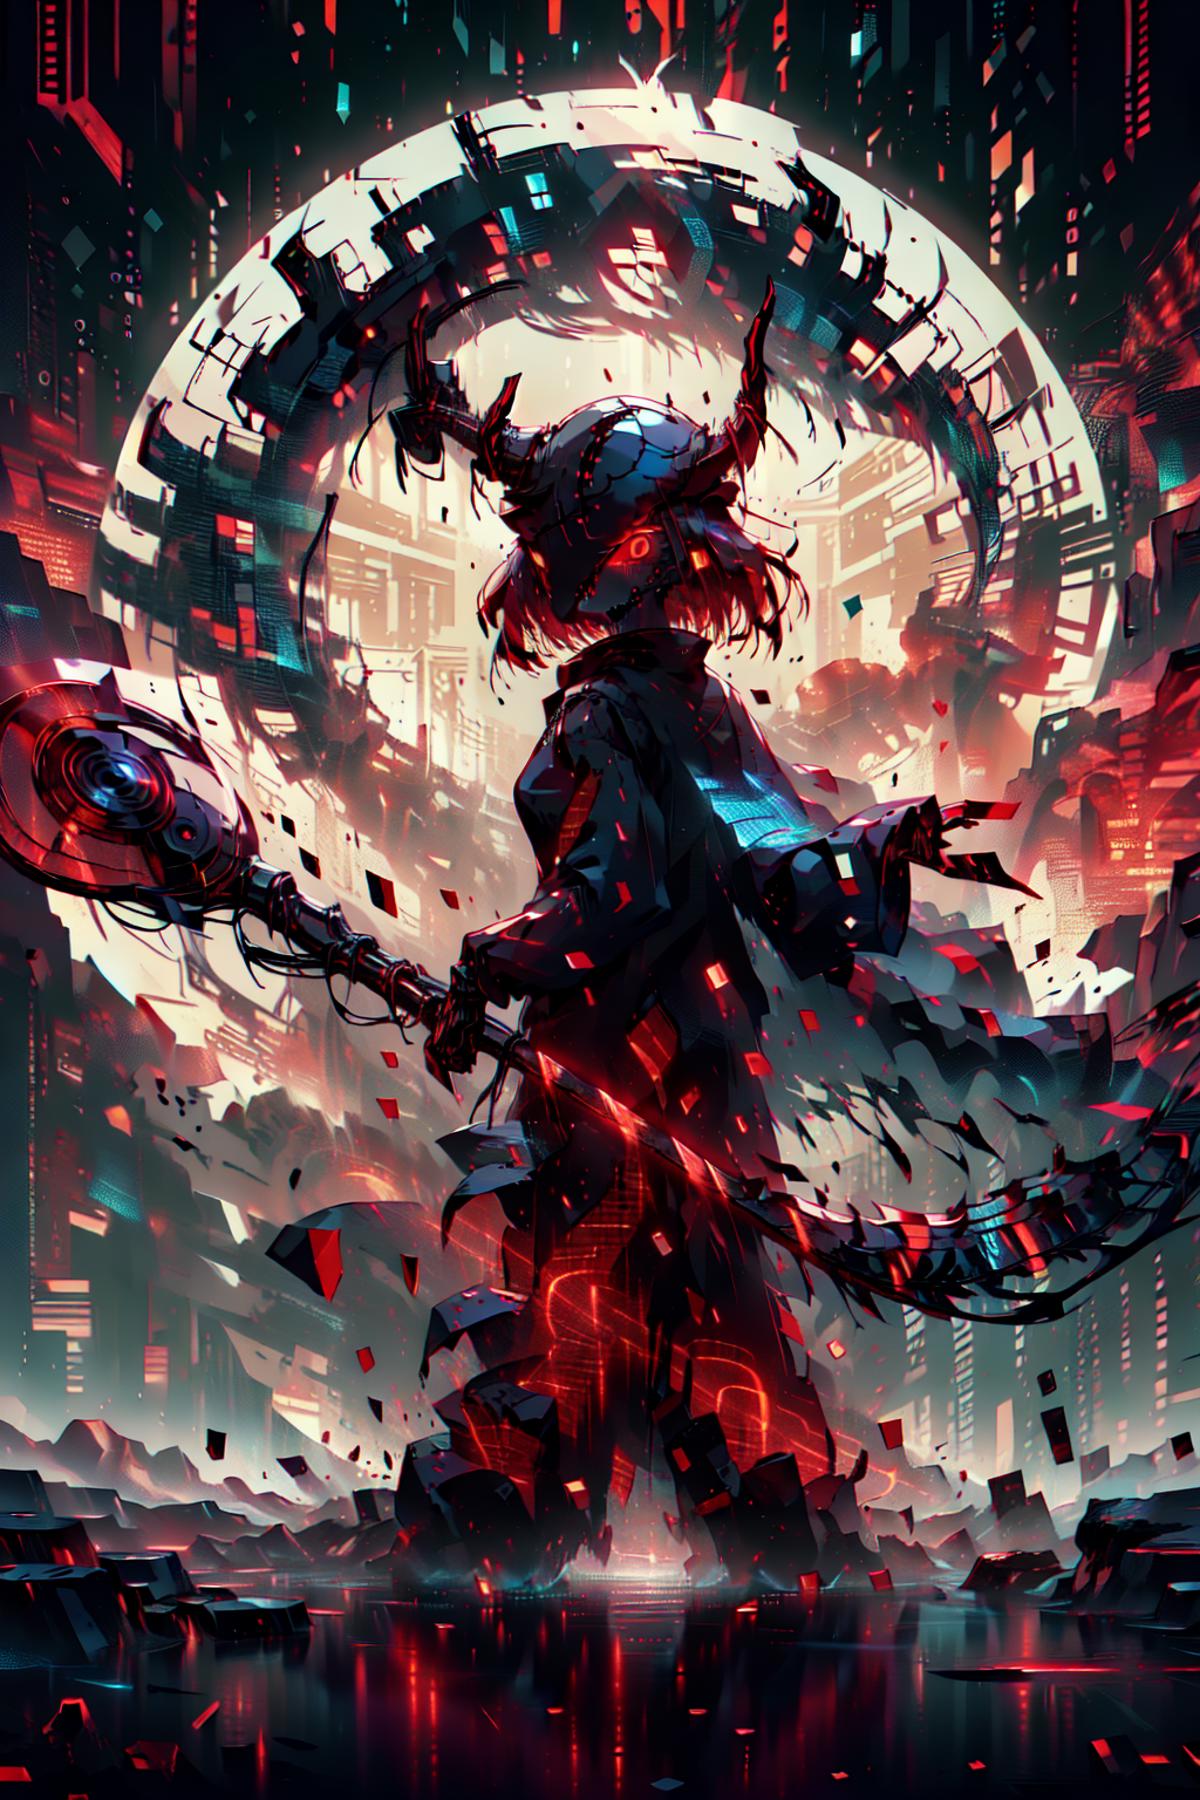 Explosion magic - Grimoire image by Junbegun